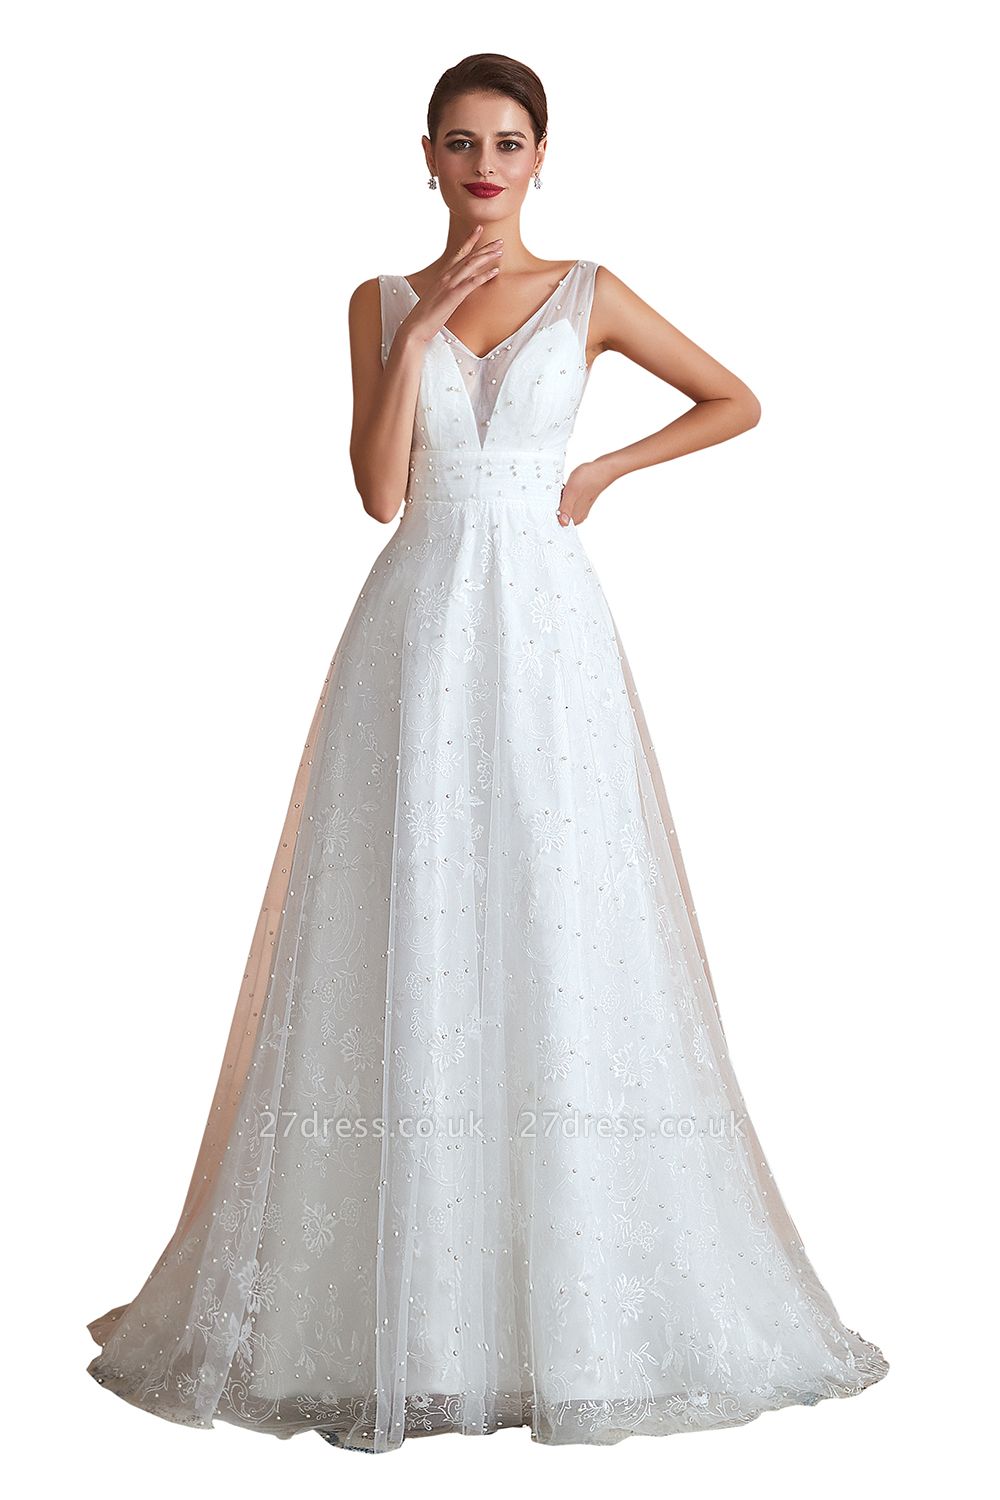 White V-neck Beach Wedding Dress Sleeveless Floor Length ALine Bridal Dress